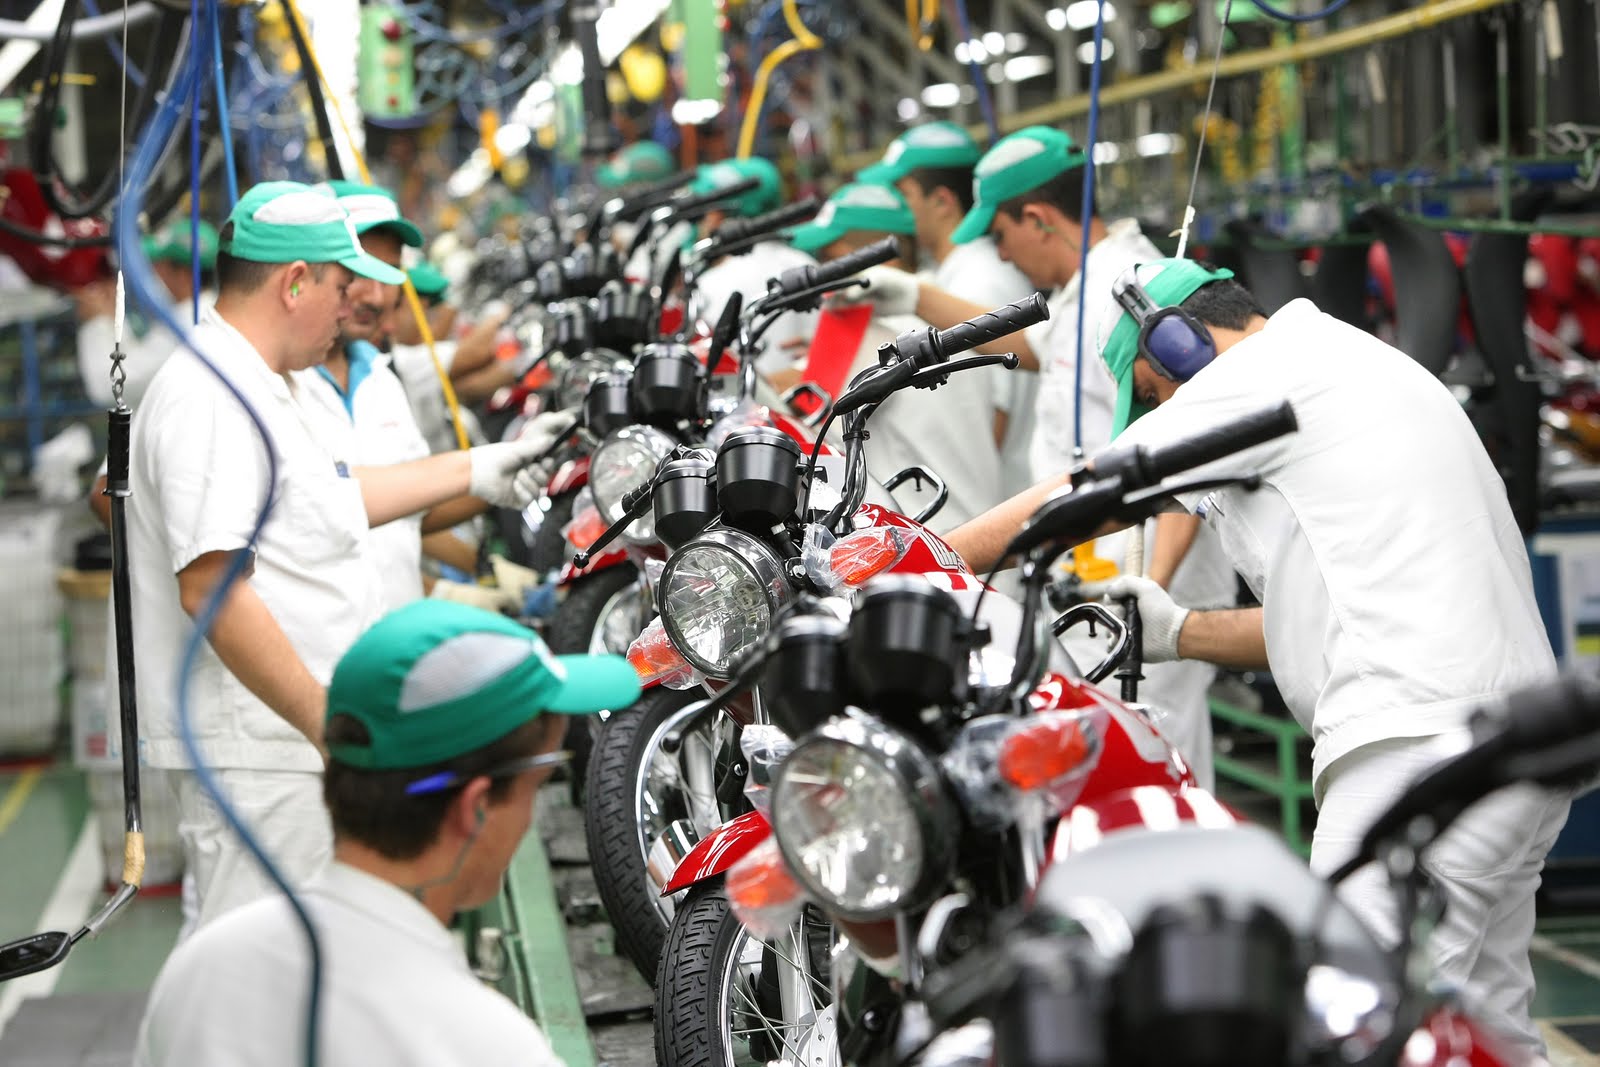 Varejo de motos cresceu 15% e ultrapassou 1 milhão de unidades